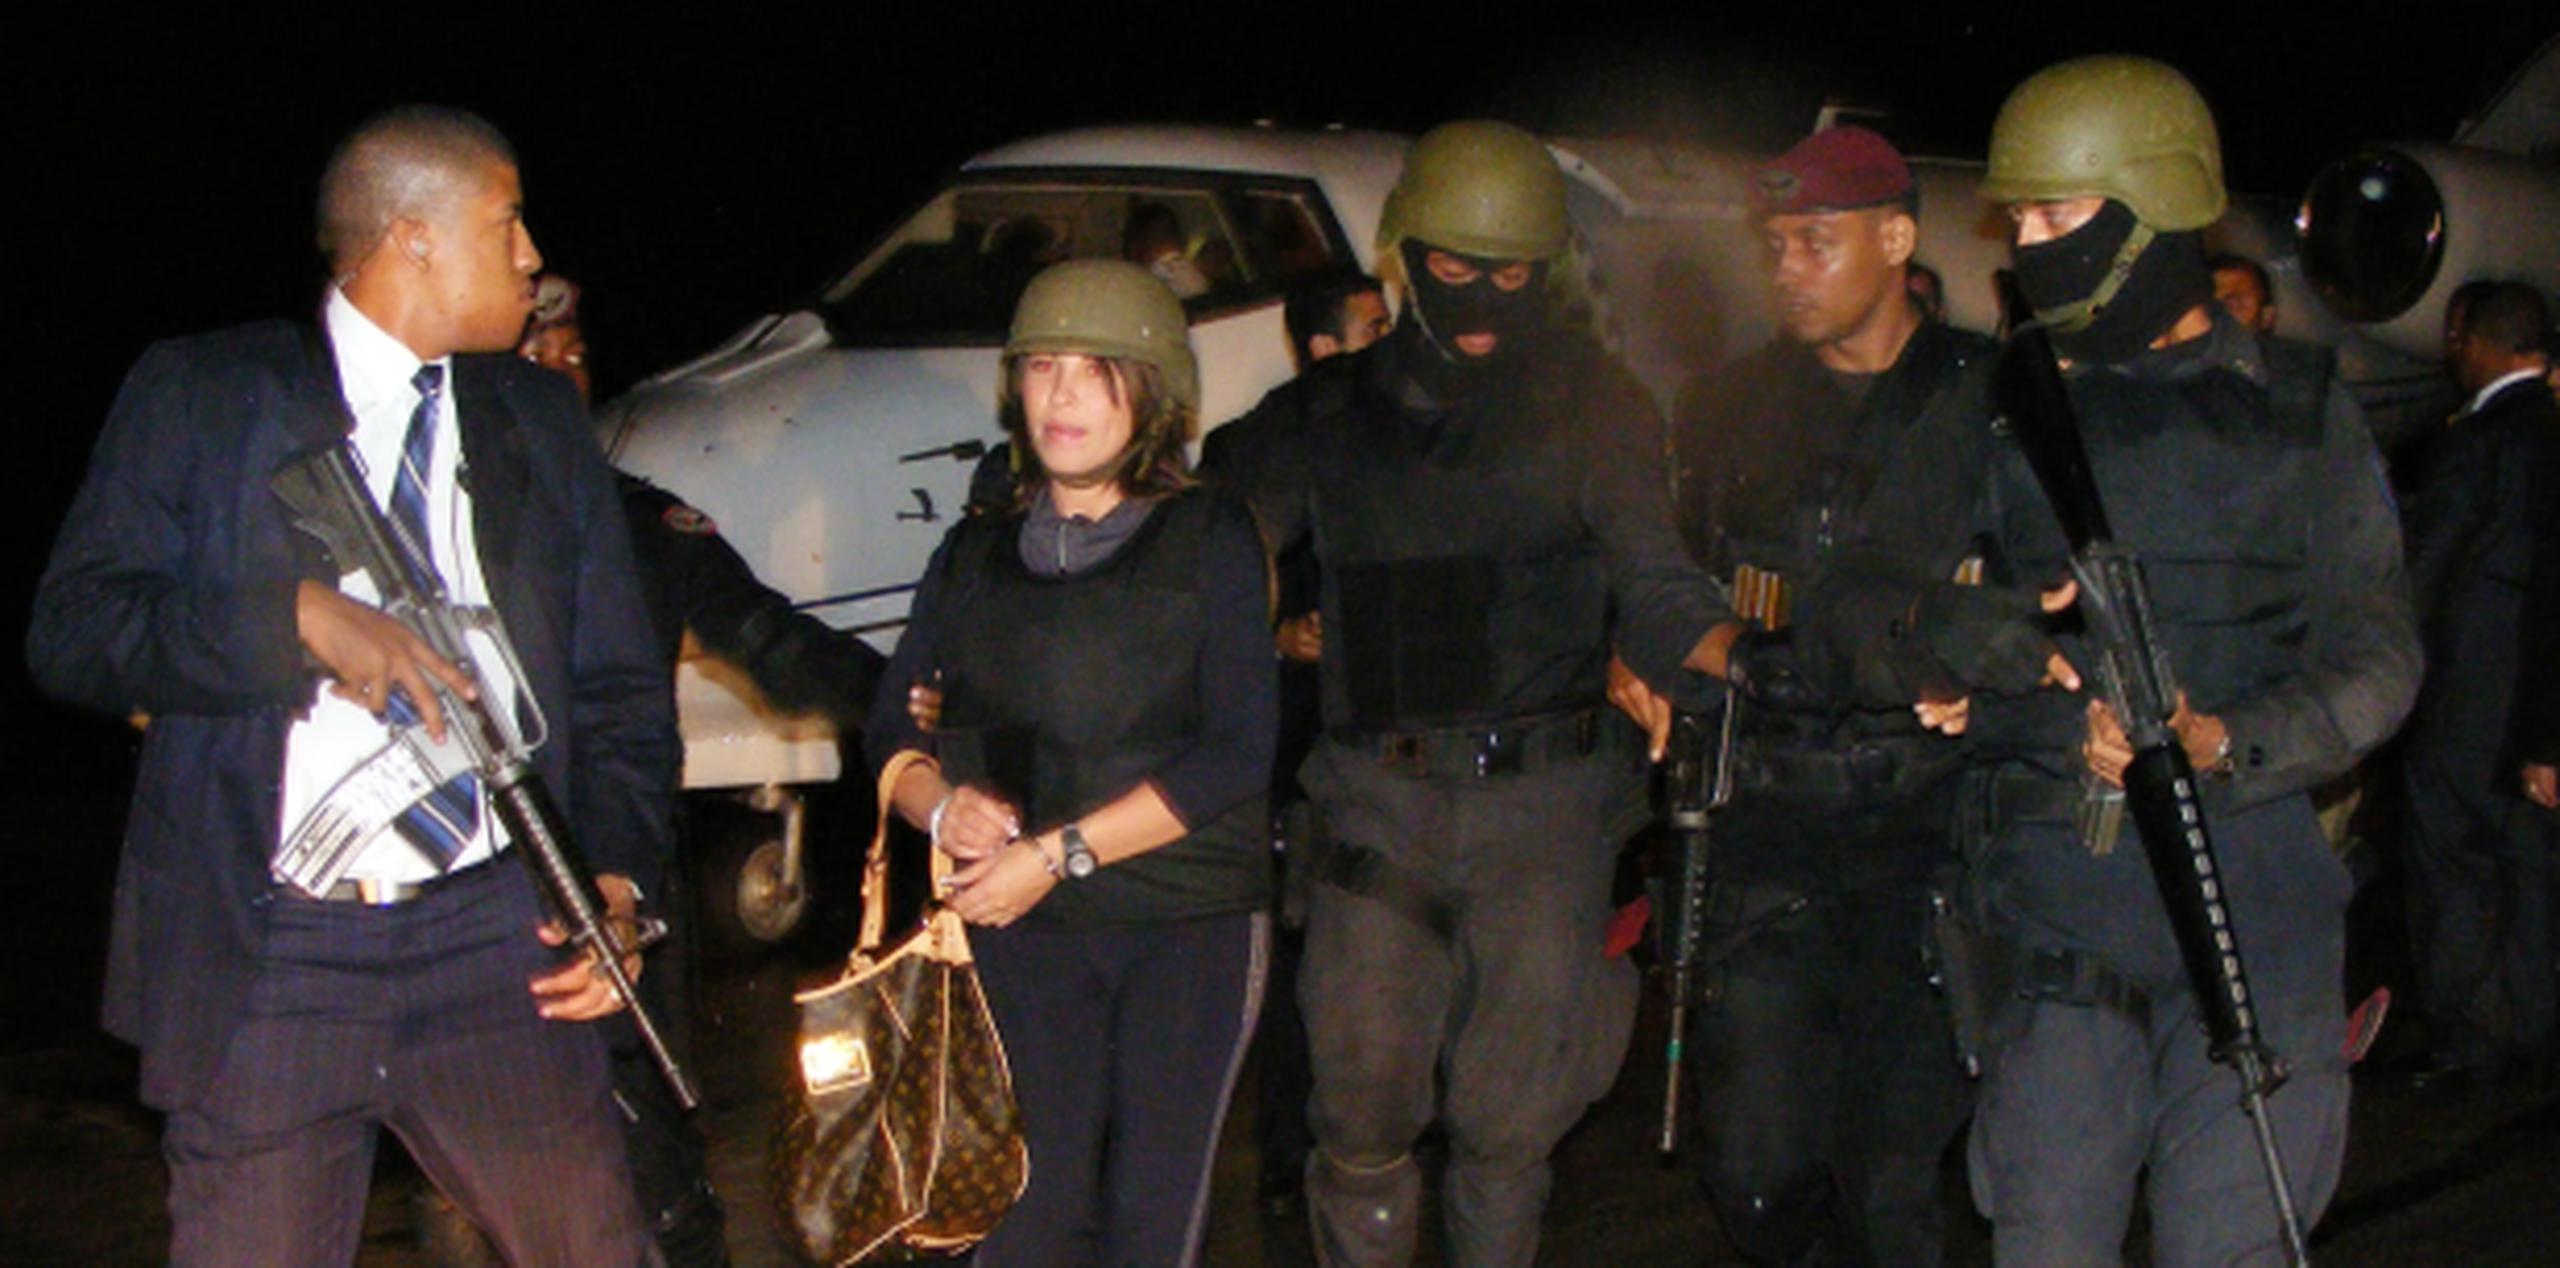 Para el 2010, la pareja del narco boricua regresó bajo extremas medidas de seguridad a la República Dominicana. (Archivo)